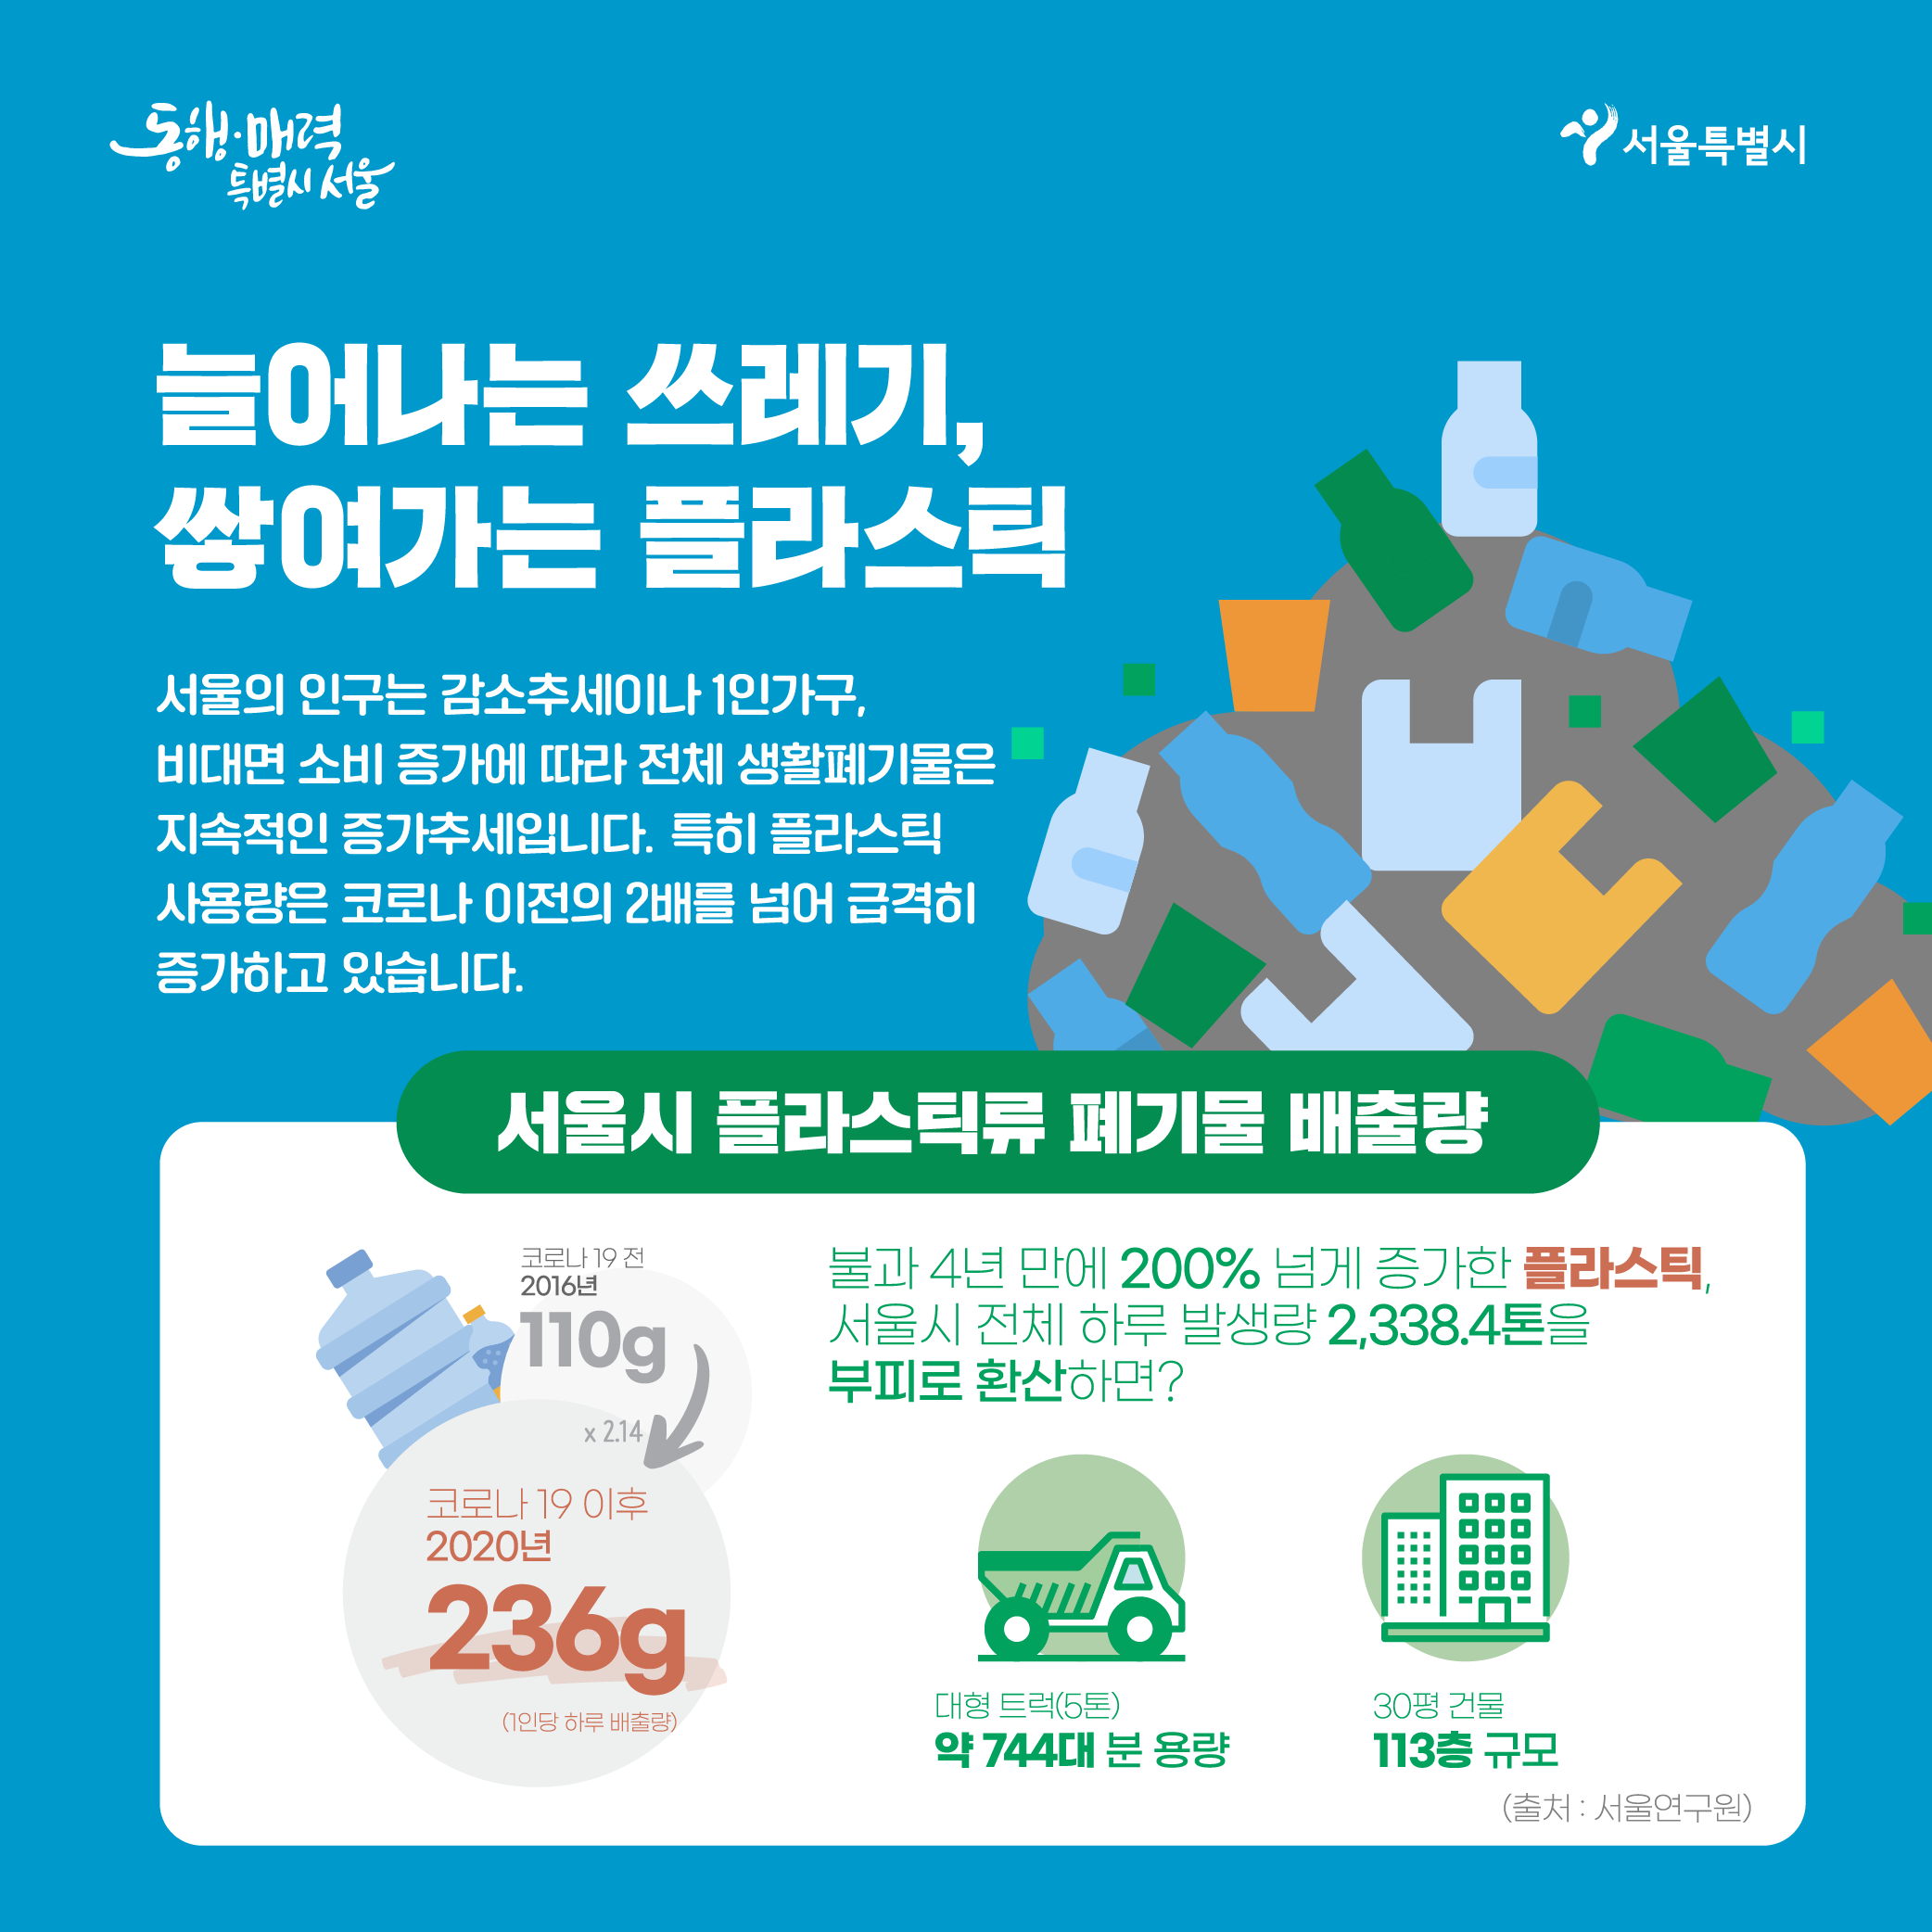 늘어나는 쓰레기, 쌓여가는 플라스틱 - 서울의 인구는 감소추세이나 1인가구, 비대면 소비 증가에 따라 전체 생활폐기물은 지속적인 증가추세입니다. 특히 플라스틱 사용량은 코로나 이전의 2배를 넘어 급격히 증가하고 있습니다. ㅇ서울시 플라스틱류 폐기물 배출량 - 코로나 19 전 2016년 110g - > 코로나 19 이후 2020년 236g (214배증가) -불과 4년만에 200% 넘게 증가한 플라스틱, 서울시 전체 하루 발생량 2,388.4톤을 부피로 환산하면? 대형트럭(5톤) 약 744대 분 용량, 30평 건물 113층 규모 (출처:서울연구원)